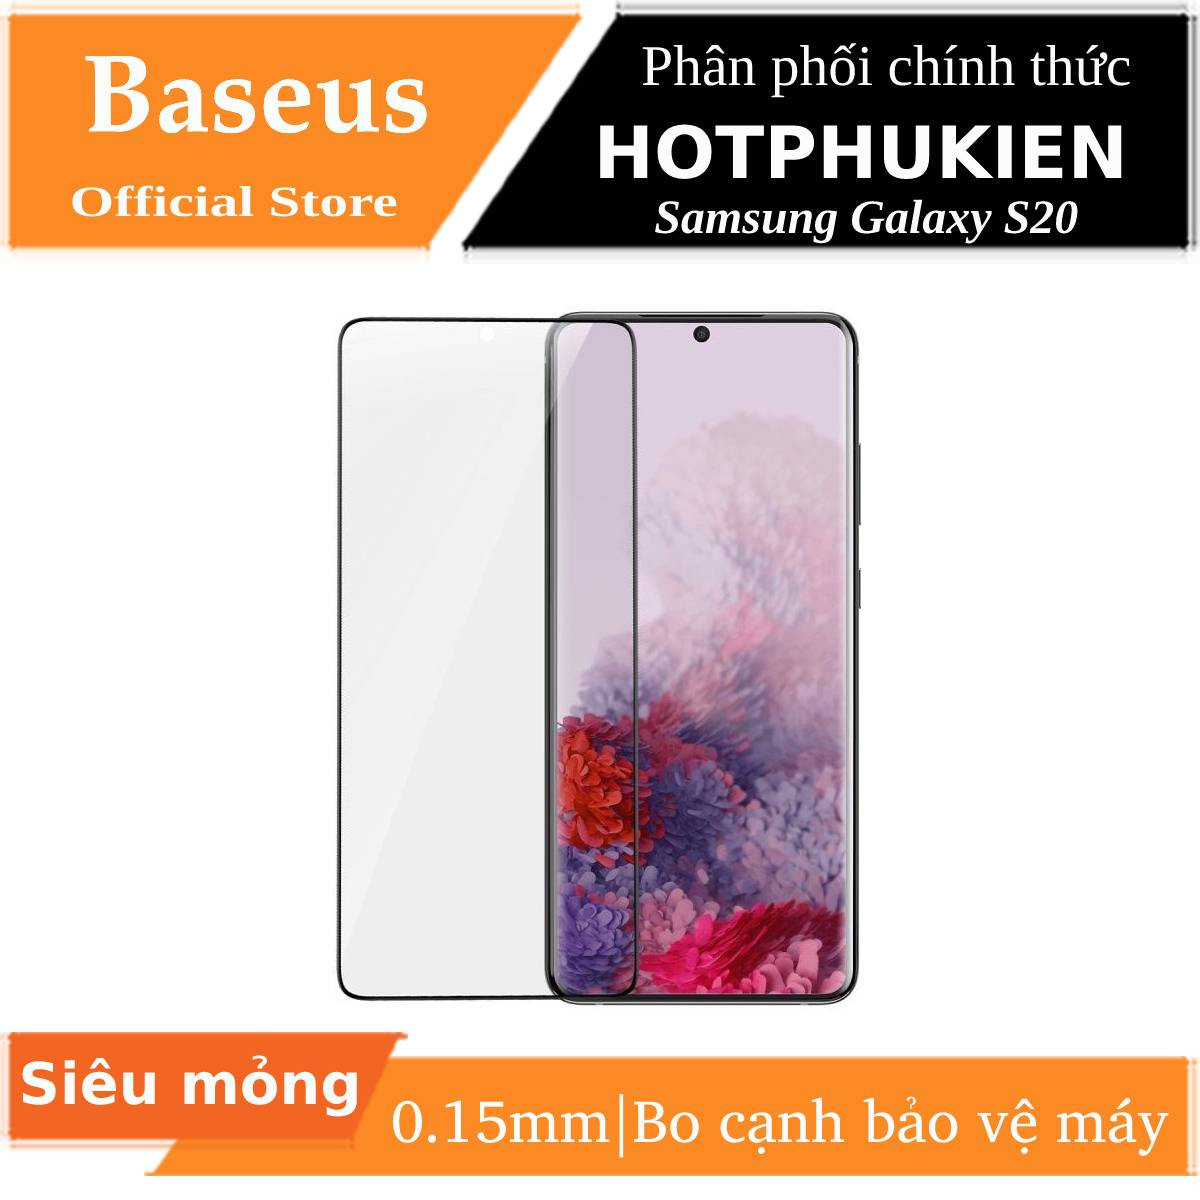 Bộ 2 Miếng dán màn hình PPF Silicon Samsung Galaxy S20 siêu mỏng 0.15mm hiệu Baseus Soft Screen